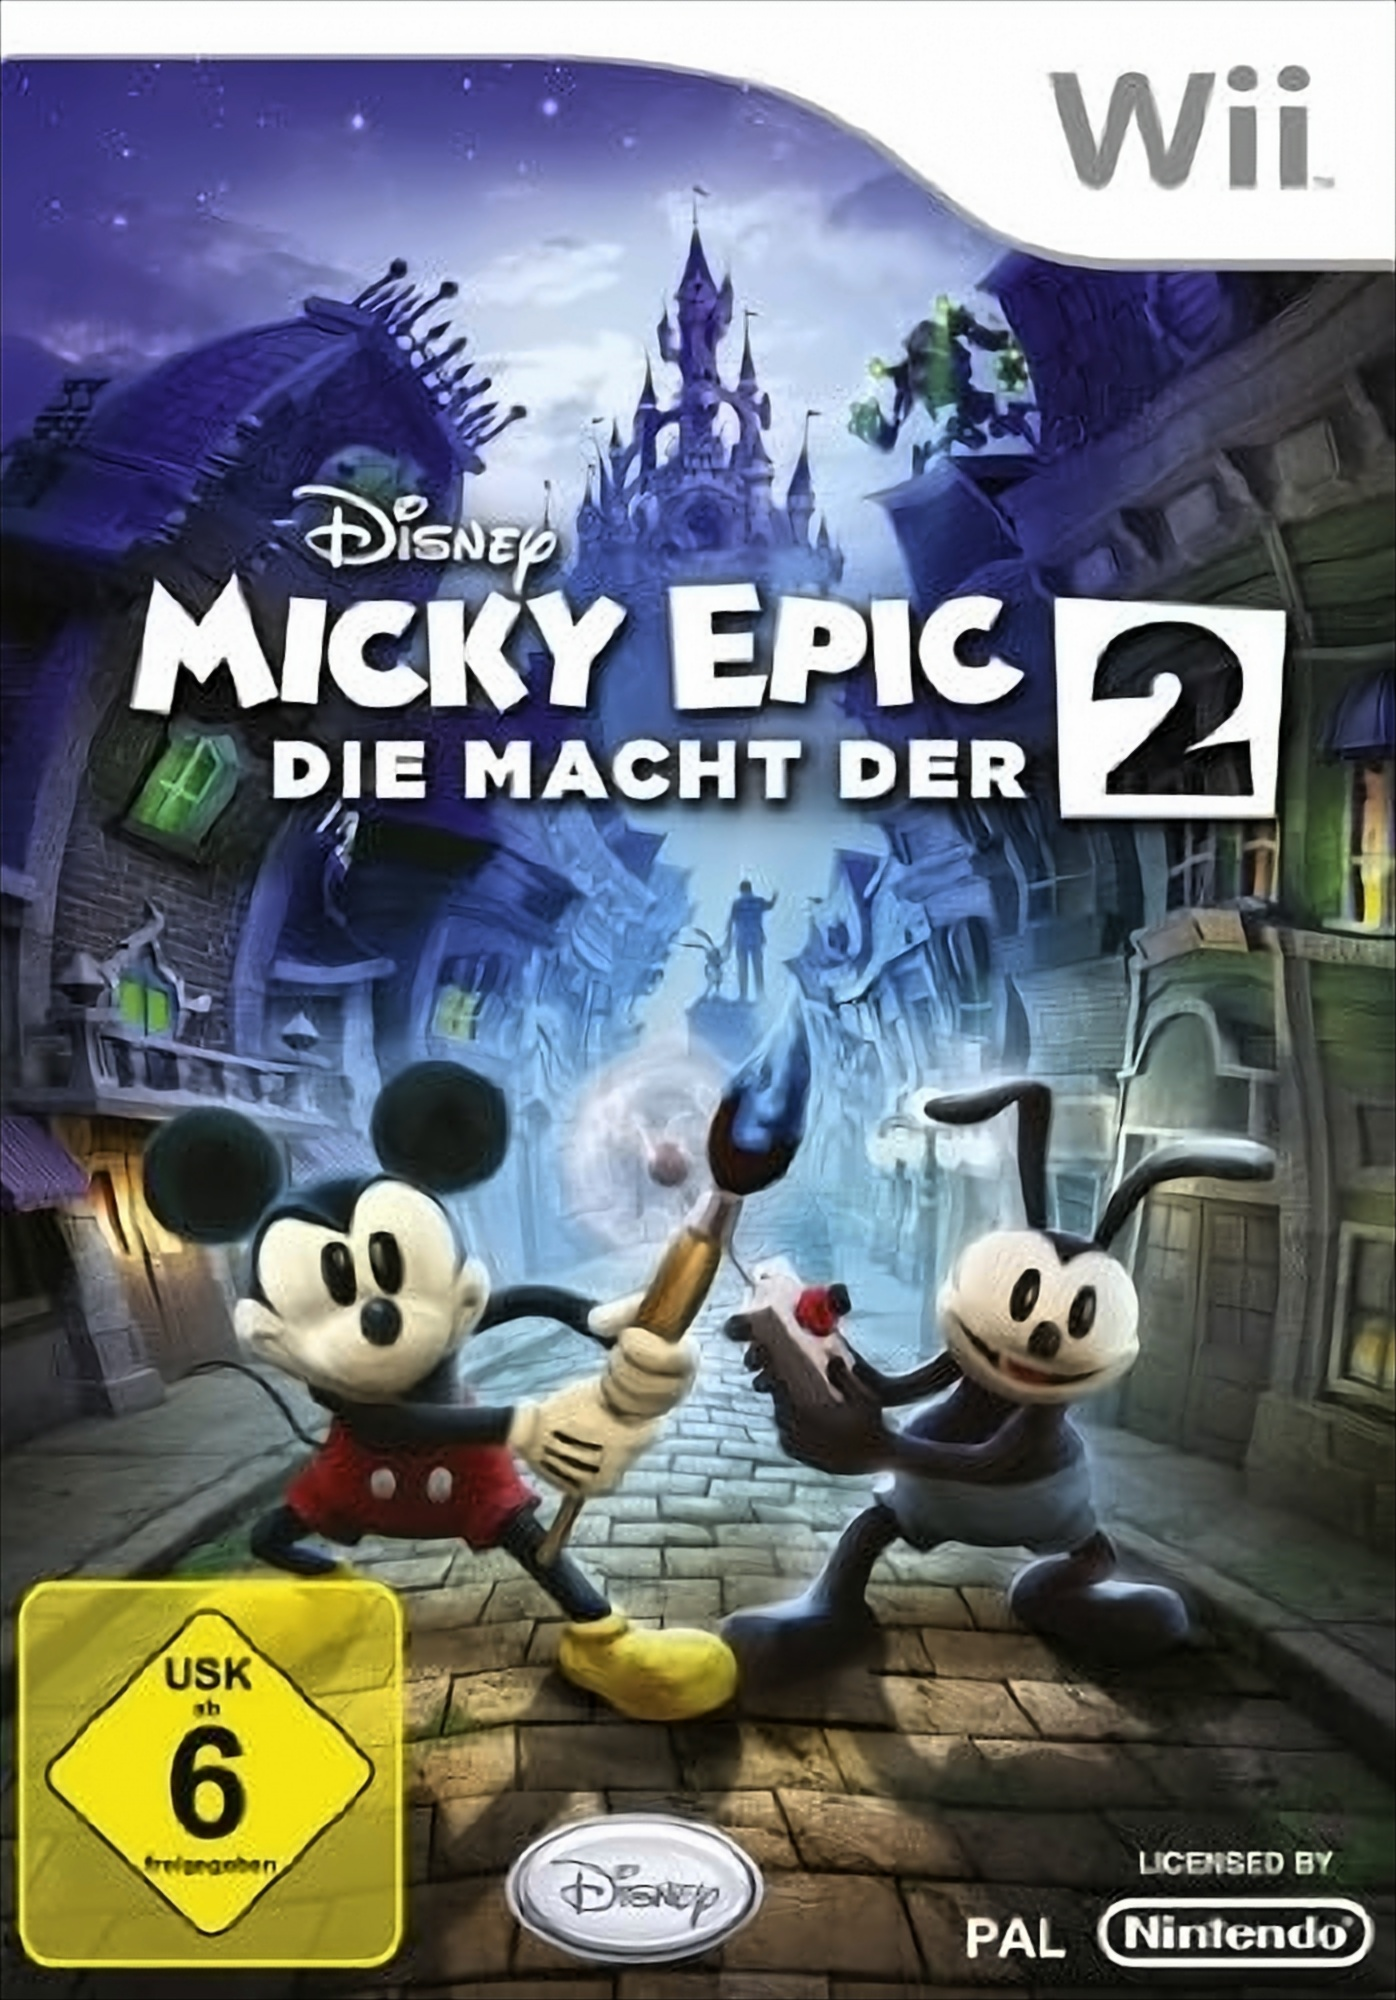 Die Macht Wii] [Nintendo - Micky der 2 Epic: Disney